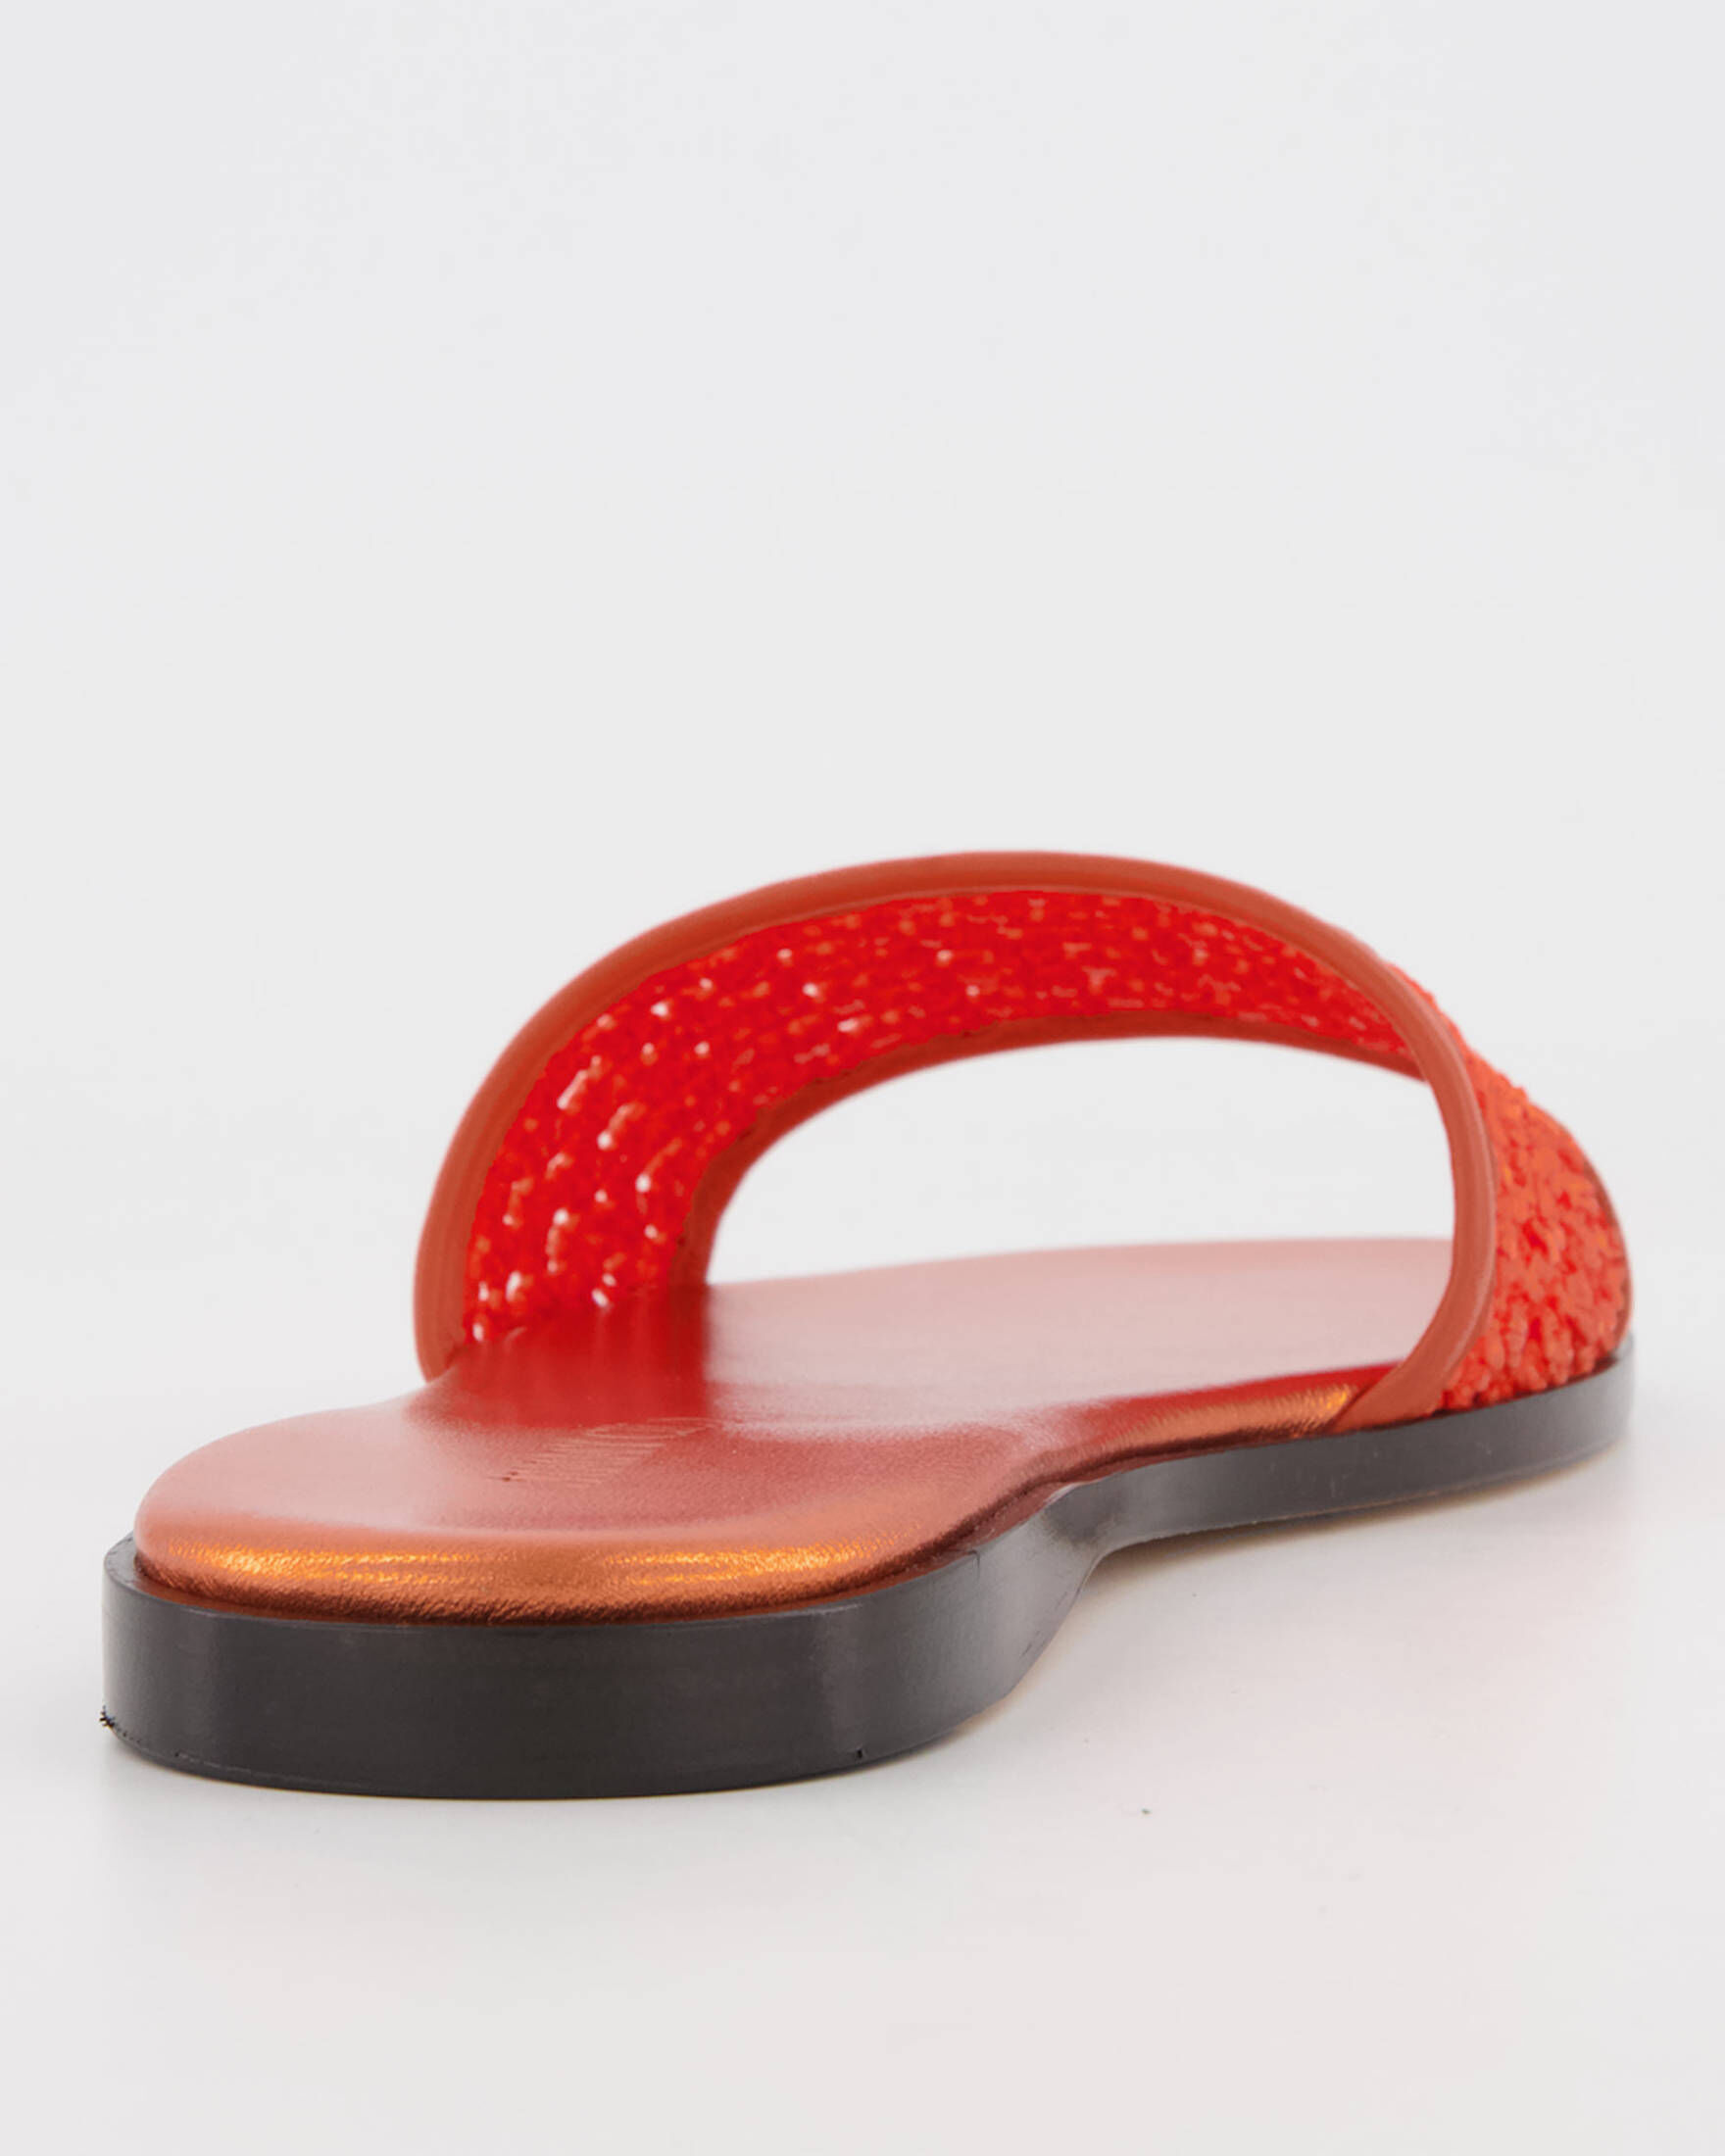 Jimmy Choo Minea Raffia Leather Slides - Orange